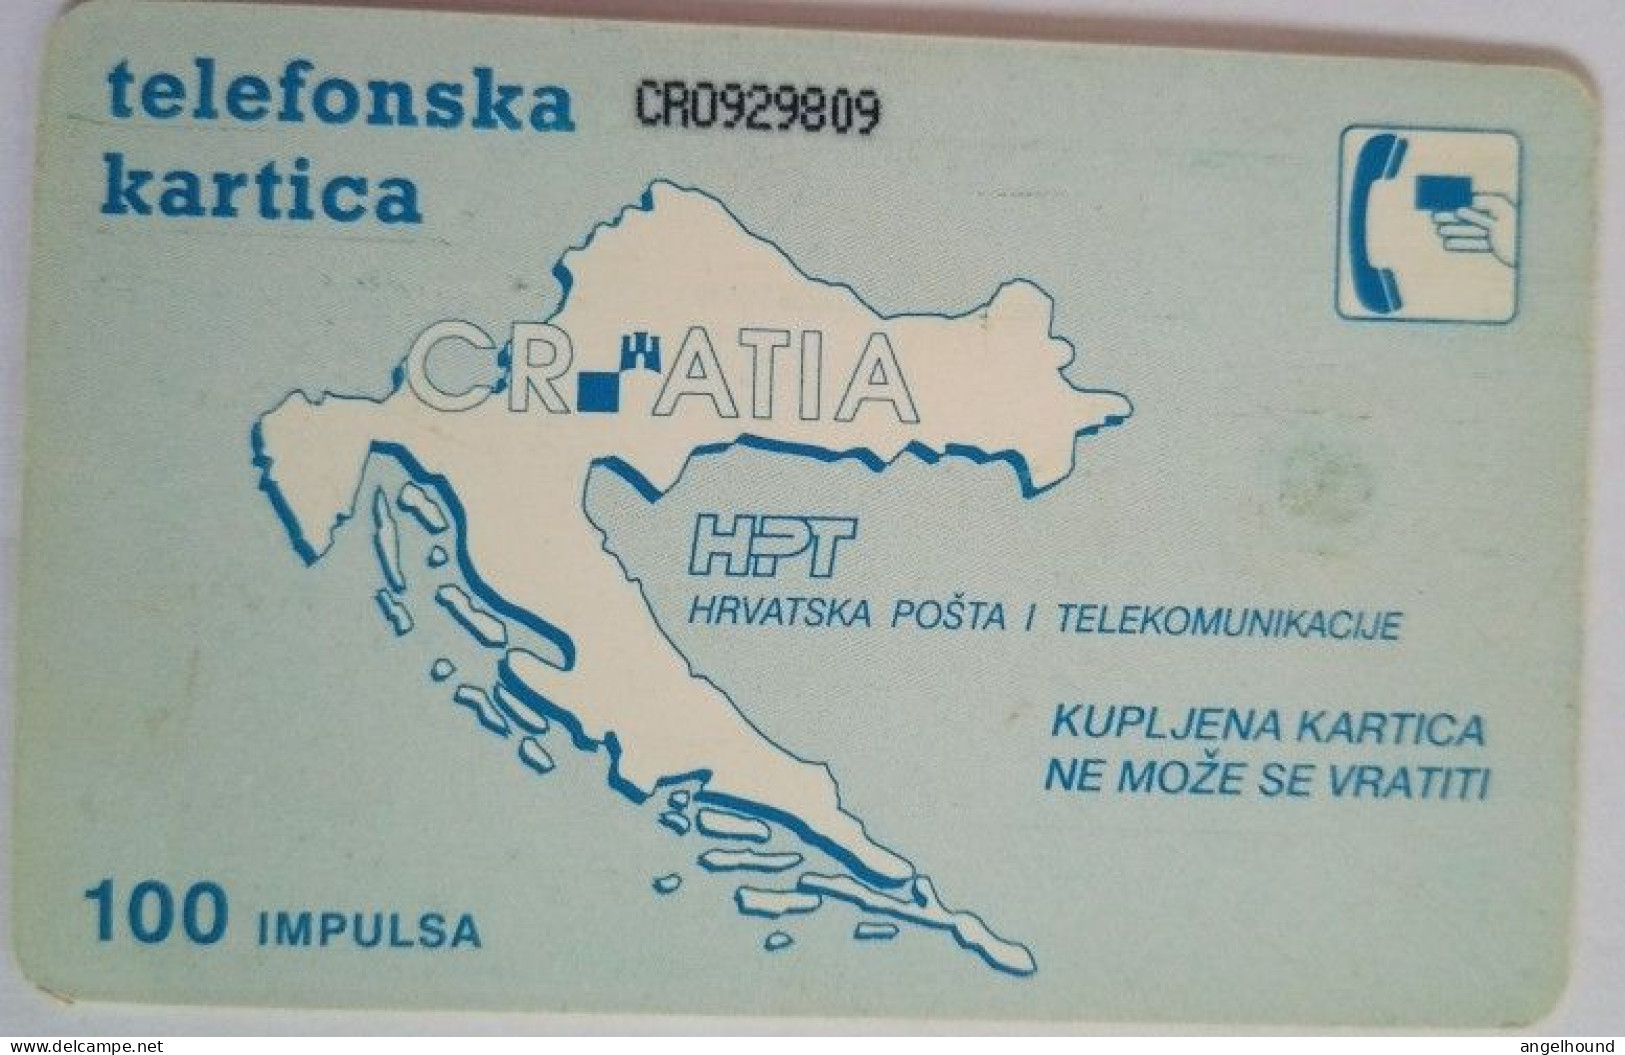 Croatia 100 Units Chip Card - Kreditna Karta Gemplus - Croatia